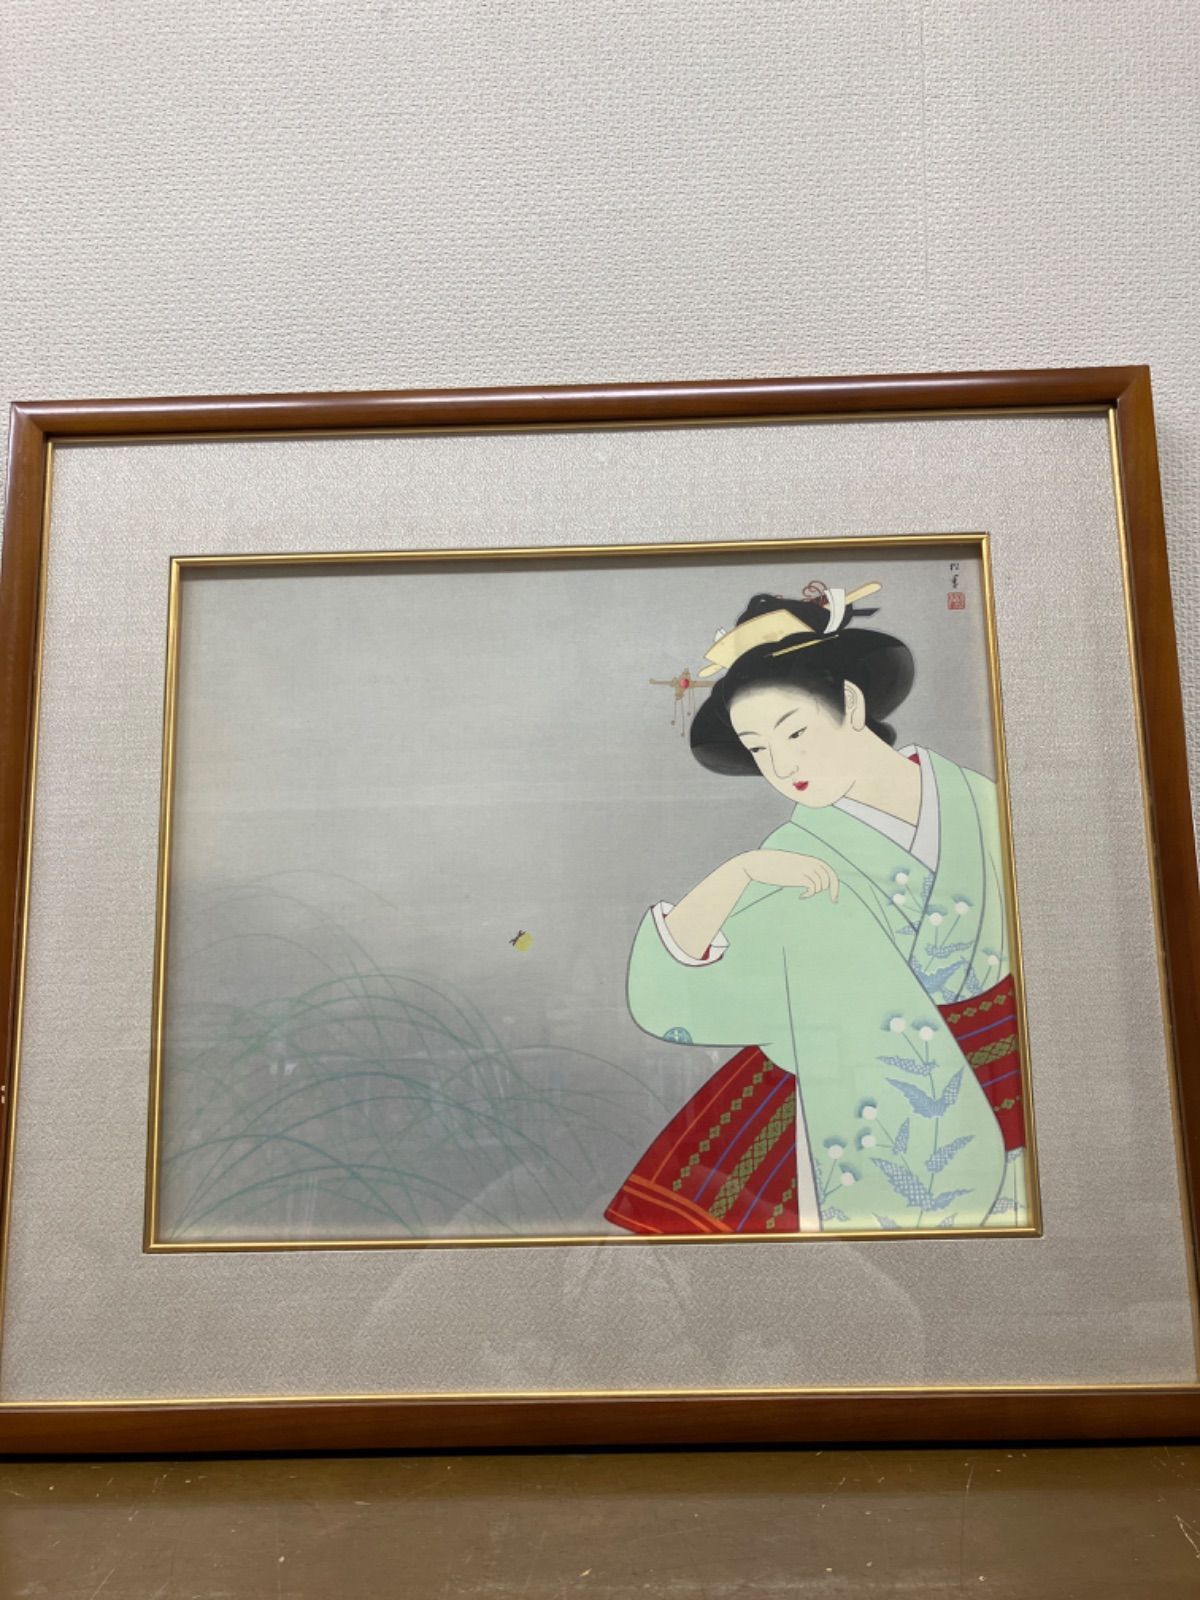 上村松園 「新蛍」木版画 268/300 - メルカリ